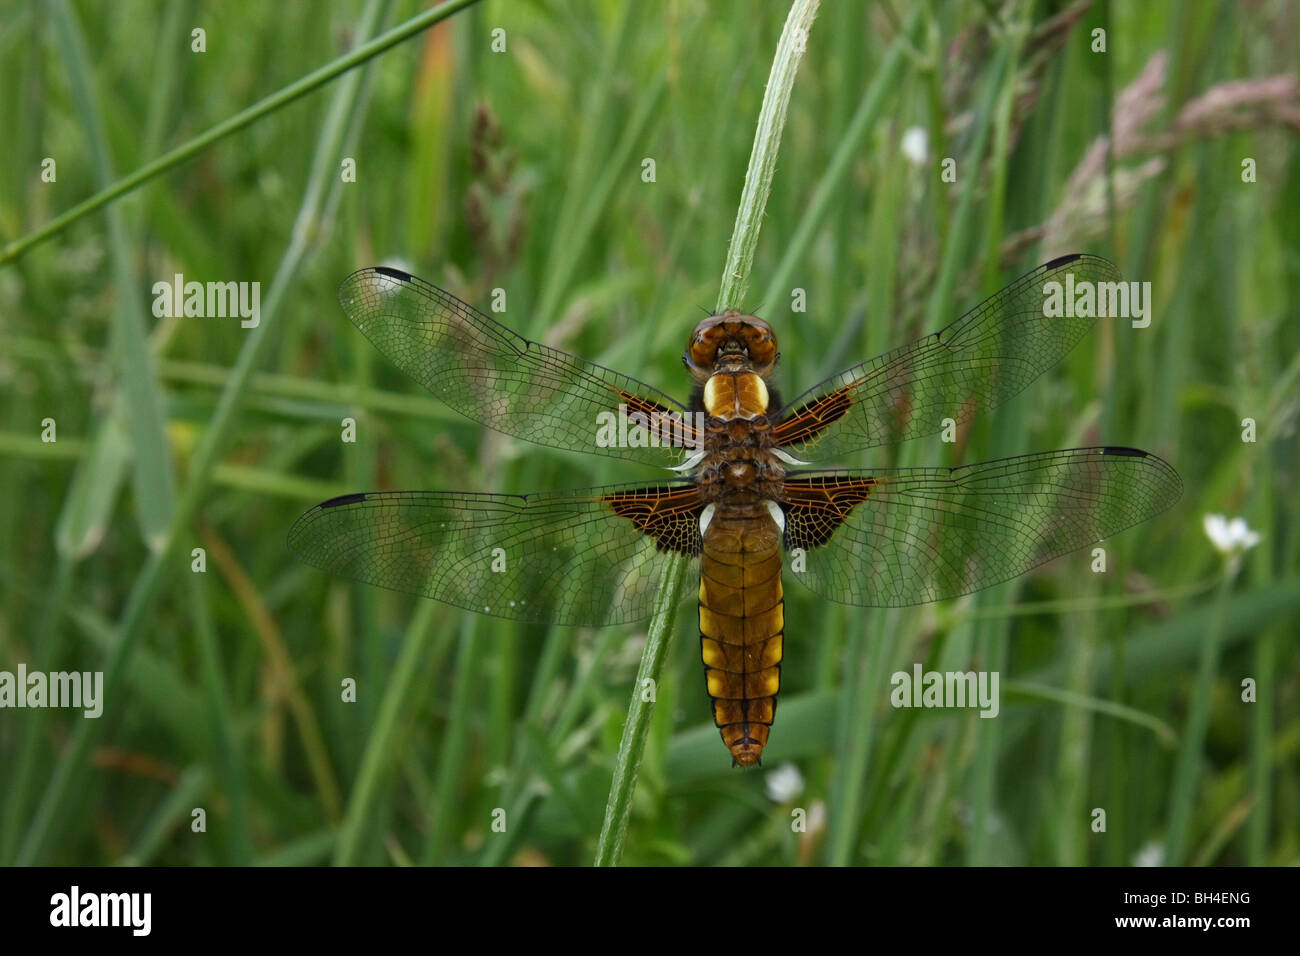 Hembra de cuerpo amplio chaser dragonfly (Libellula depressa) descansando en un tallo de hierba en la noche. Foto de stock